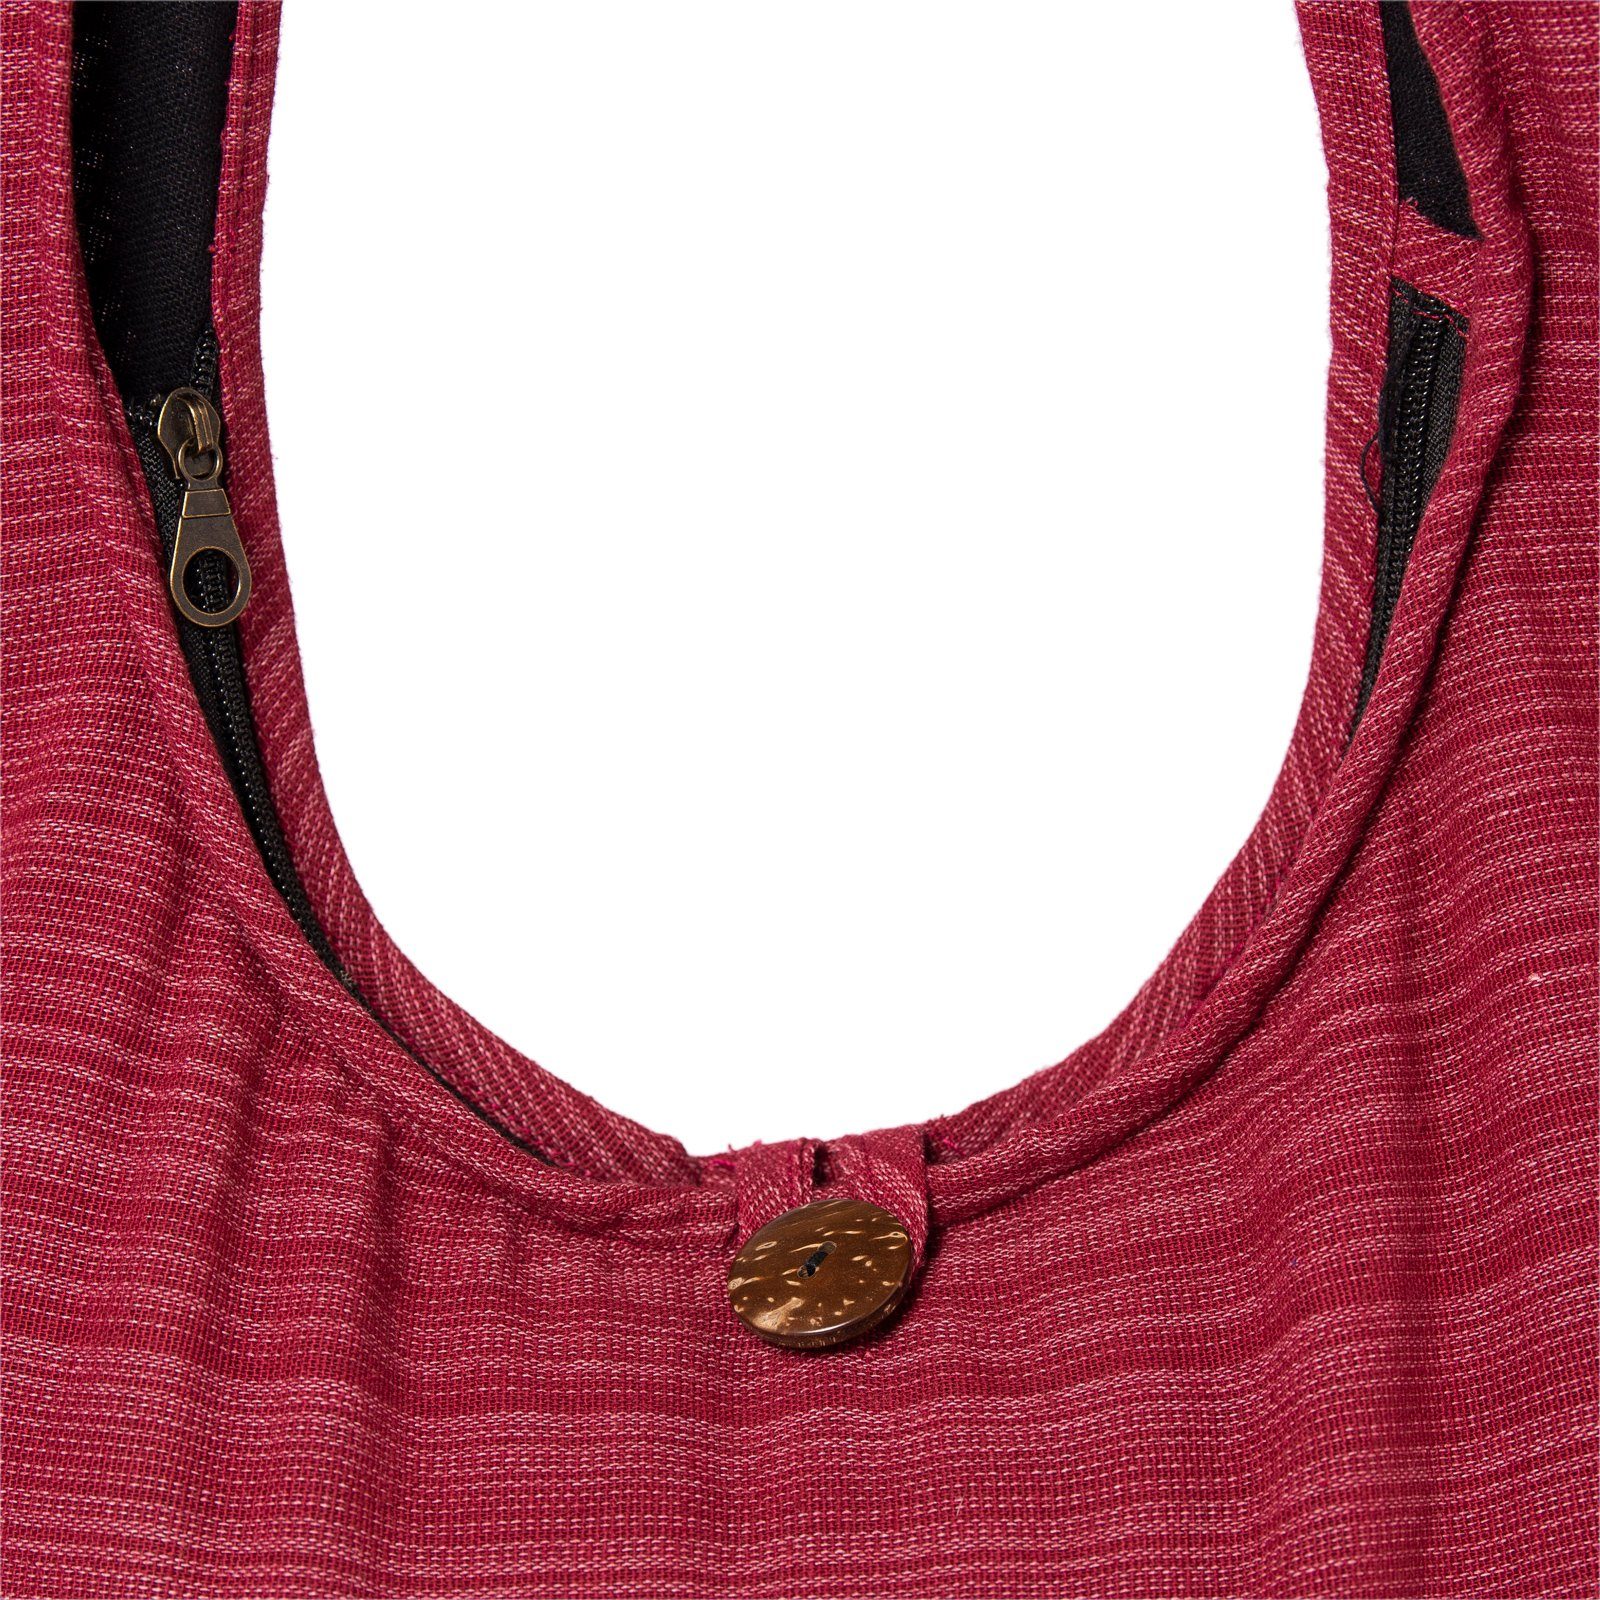 PANASIAM Wickeltasche Schulterbeutel Lini Größen In oder Strandtasche als Beuteltasche bordeux rot aus Baumwolle Schultertasche, 100% Handtasche Yogatasche nutzbar auch 2